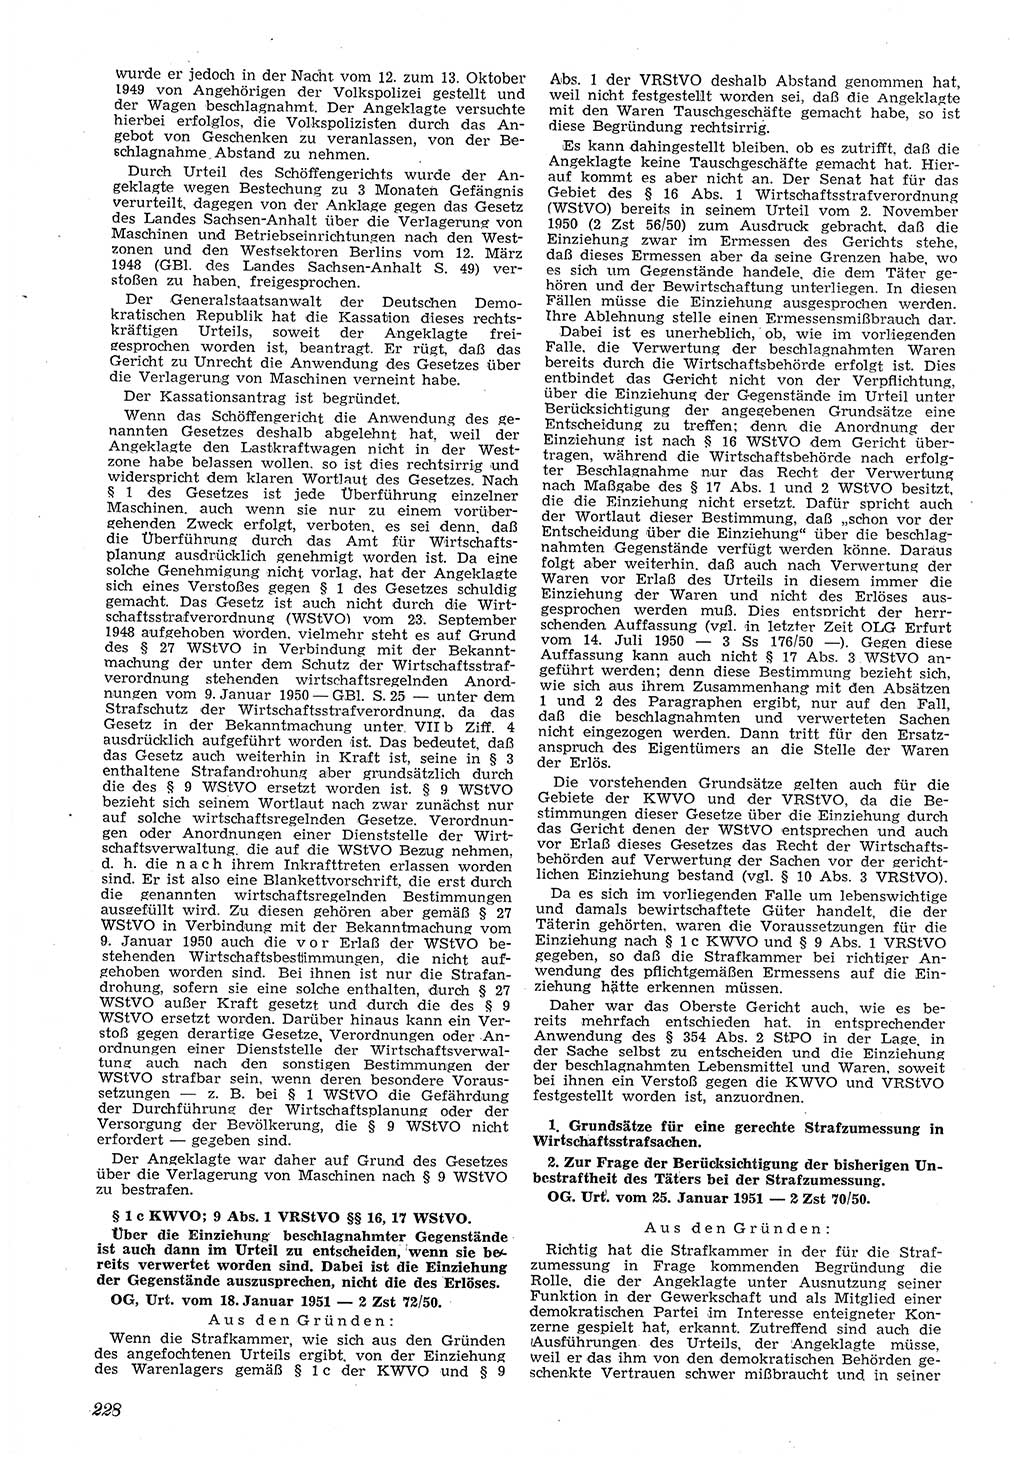 Neue Justiz (NJ), Zeitschrift für Recht und Rechtswissenschaft [Deutsche Demokratische Republik (DDR)], 5. Jahrgang 1951, Seite 228 (NJ DDR 1951, S. 228)